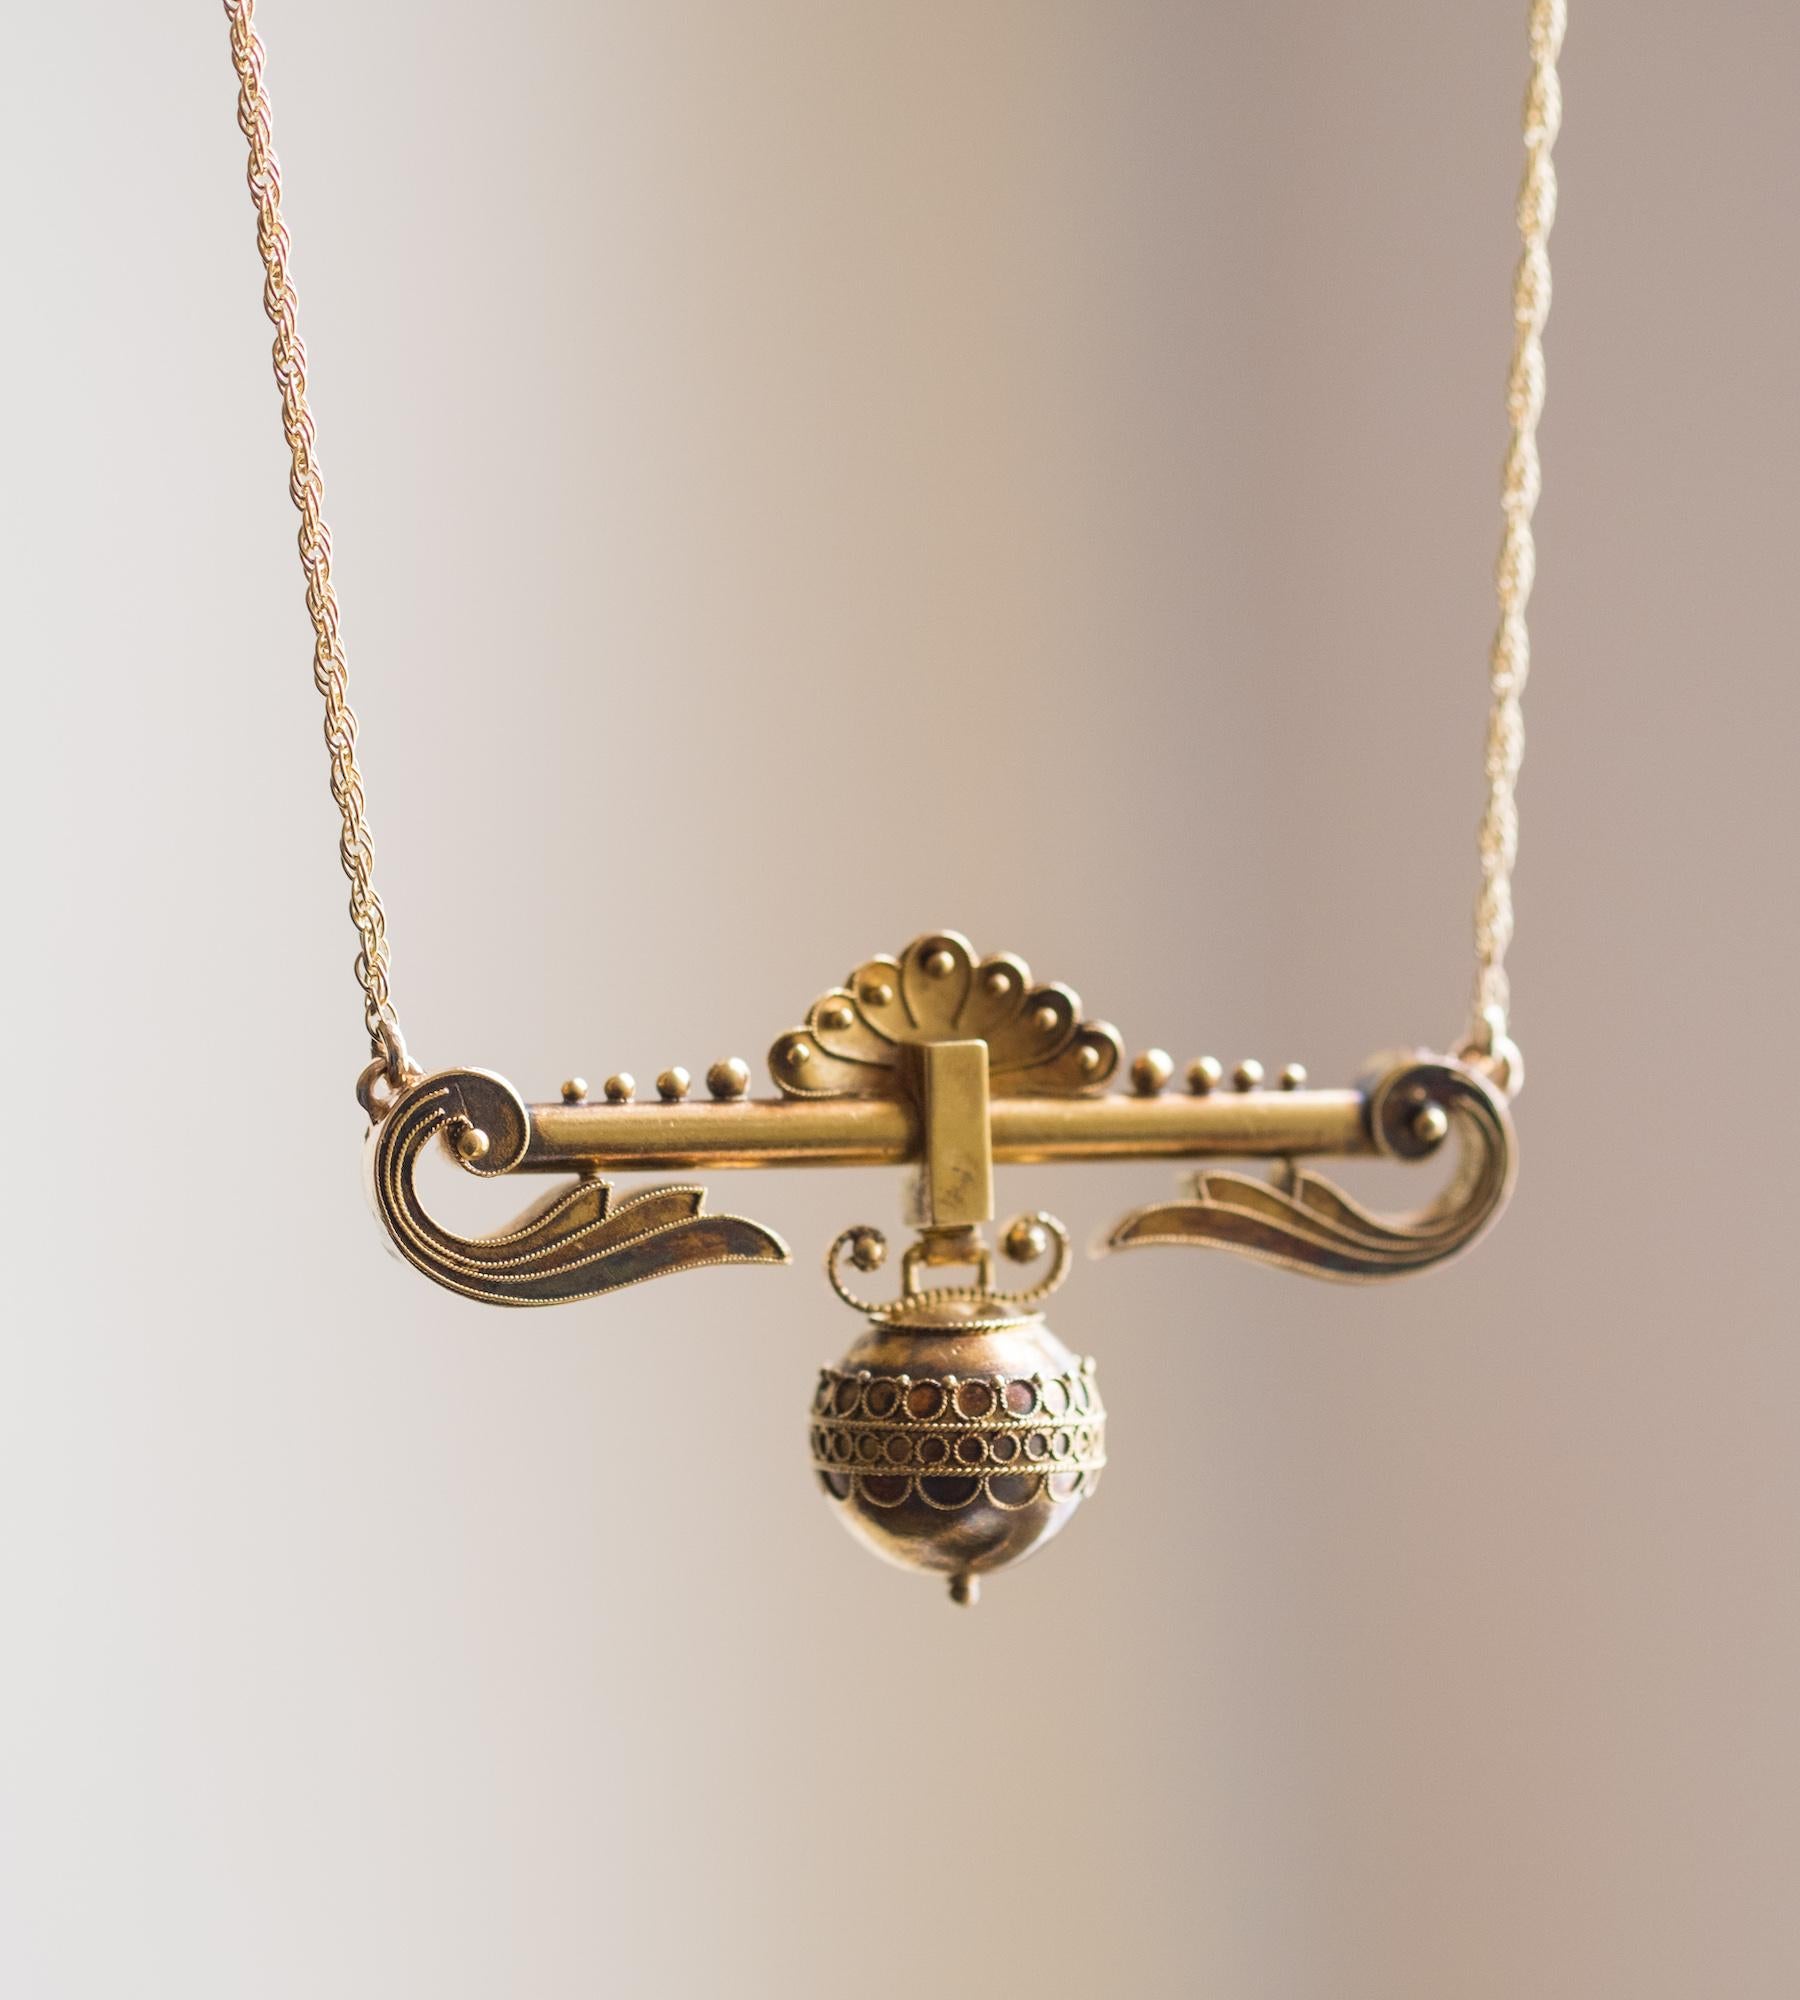 Notre dernière transformation de Fleur Fairfax est un collier en or très décoratif ; une ancienne broche de la fin du 19ème siècle. Réimaginé ici sur une chaîne en or fixe, le design présente une sphère suspendue unique avec une décoration